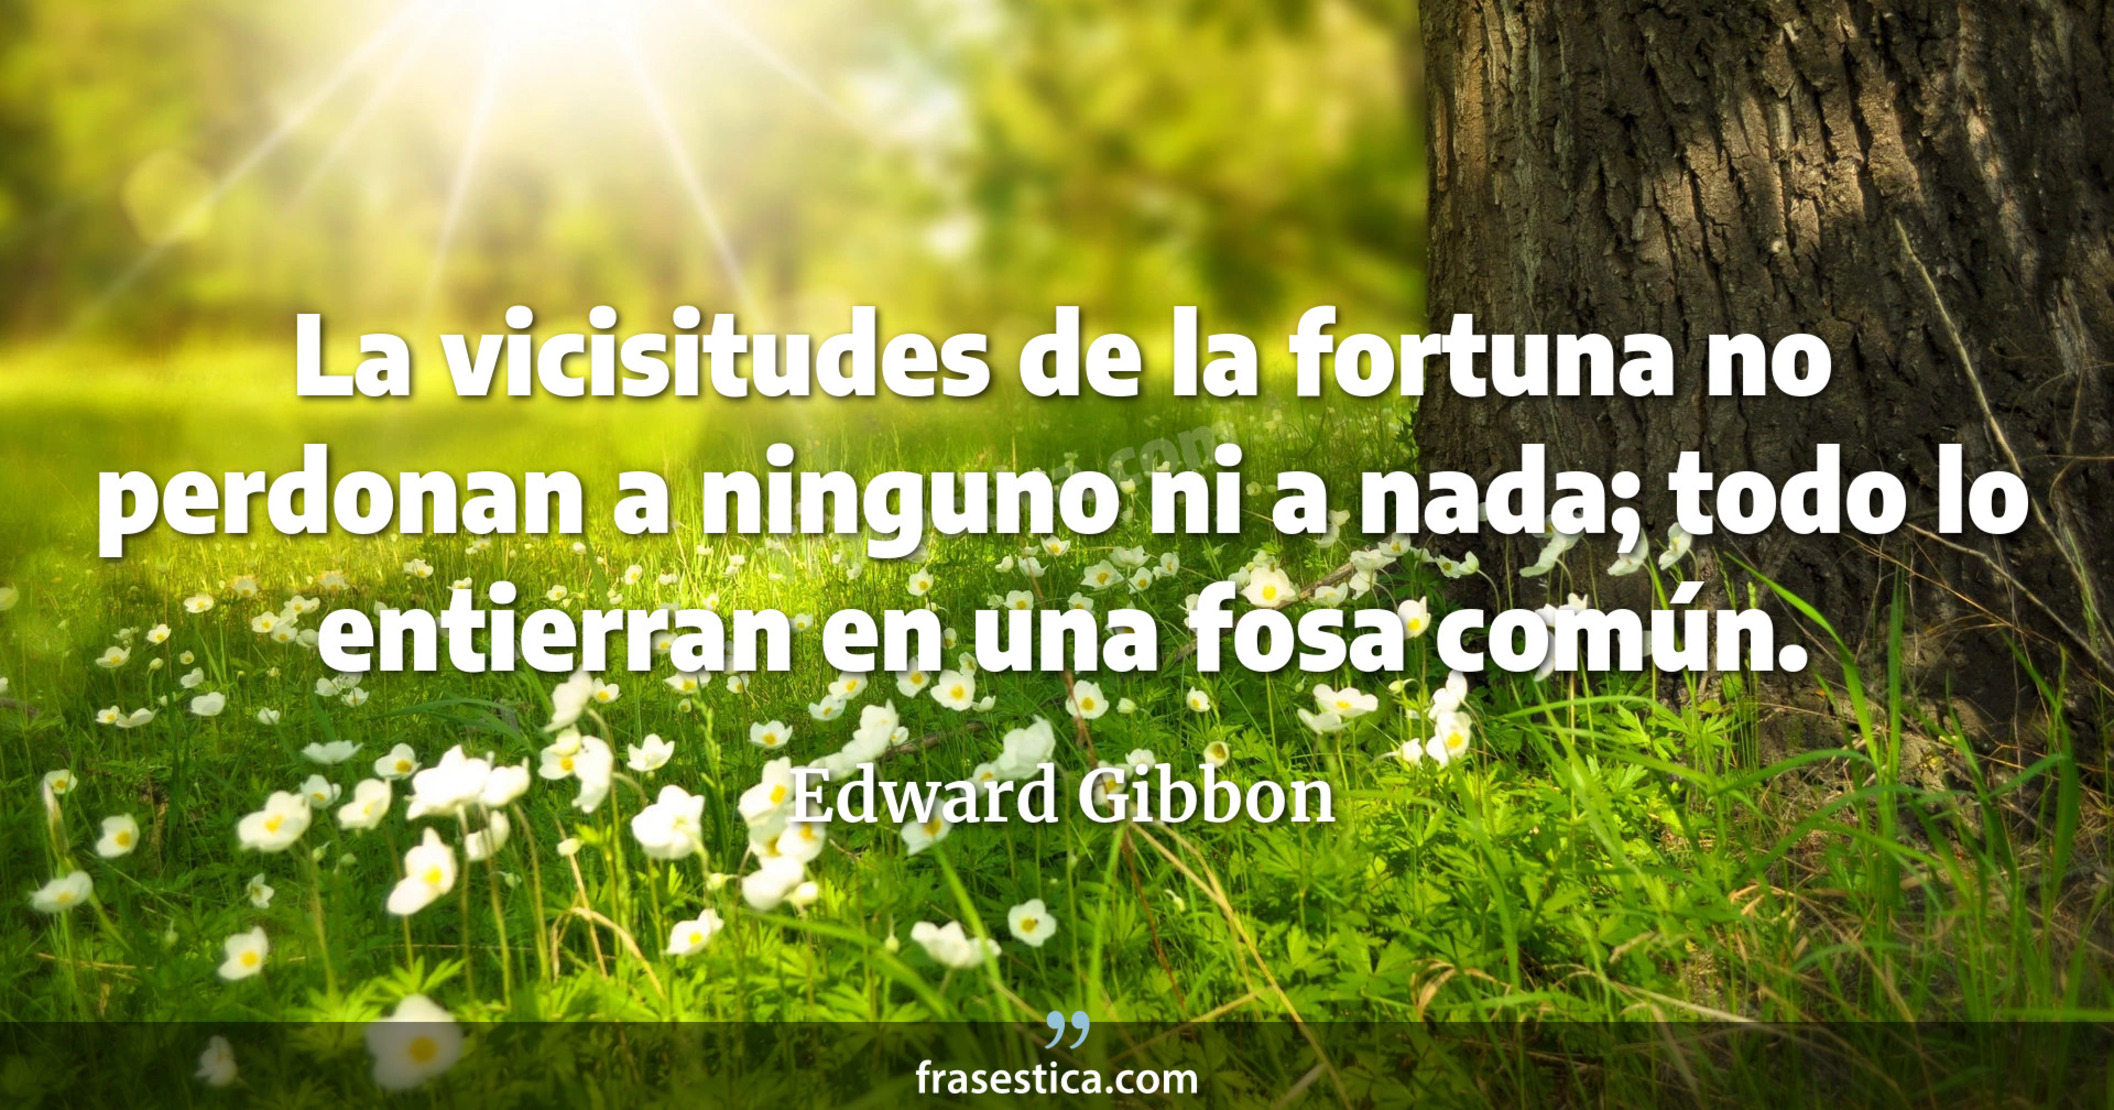 La vicisitudes de la fortuna no perdonan a ninguno ni a nada; todo lo entierran en una fosa común. - Edward Gibbon